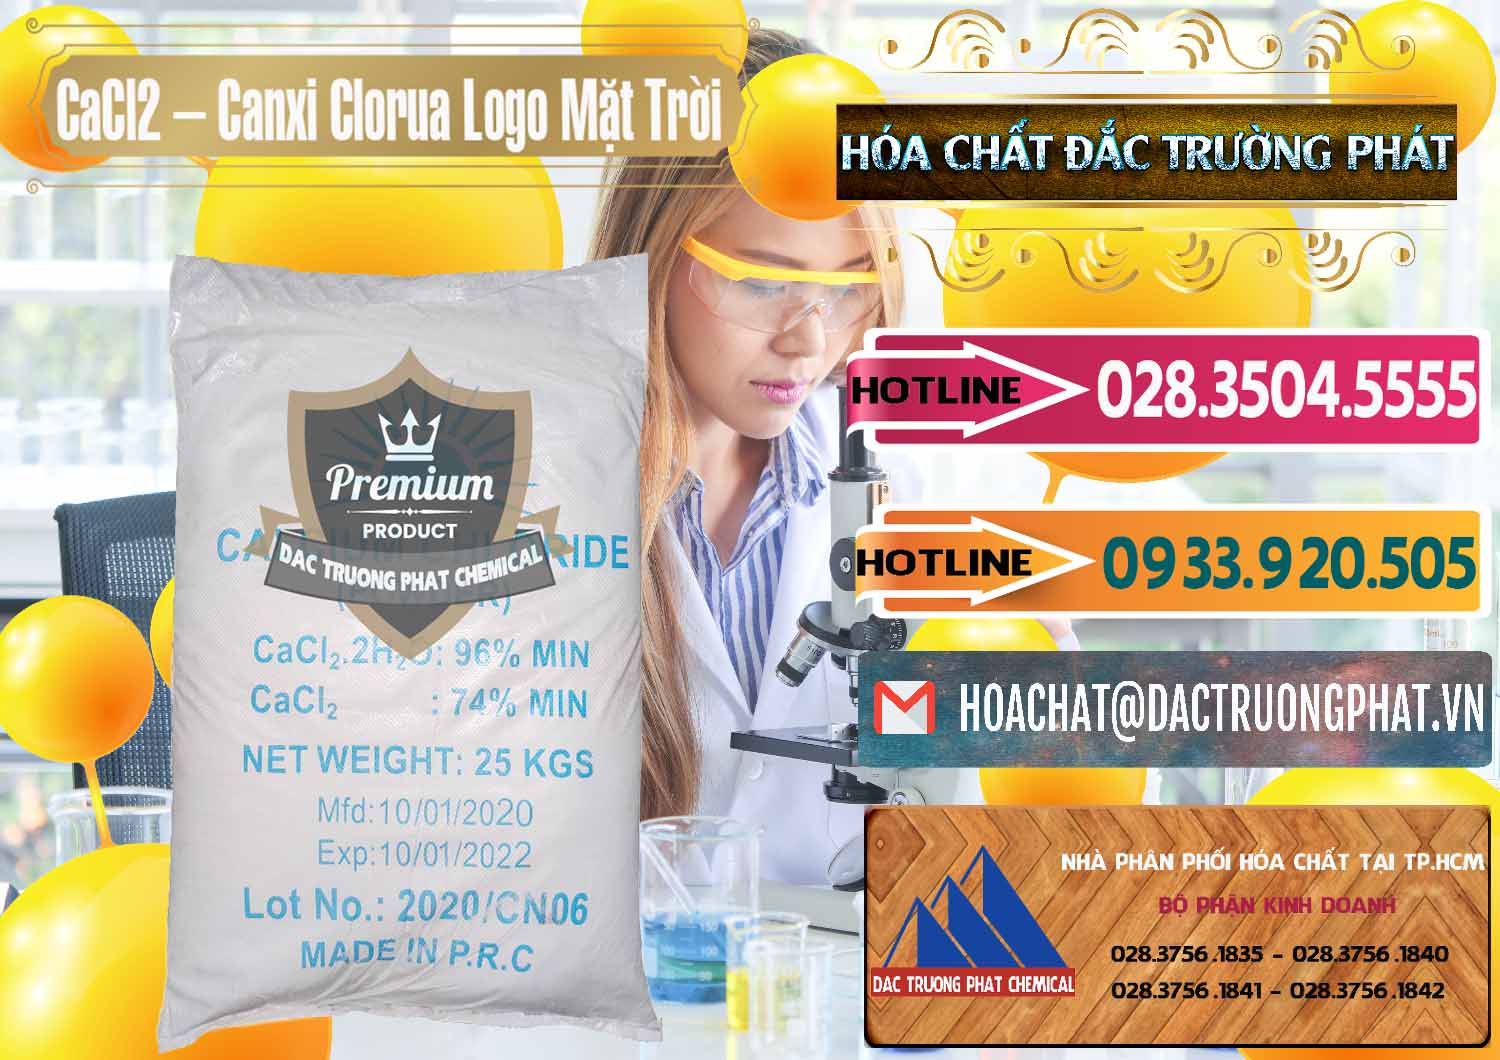 Nơi chuyên kinh doanh ( bán ) CaCl2 – Canxi Clorua 96% Logo Mặt Trời Trung Quốc China - 0041 - Công ty chuyên cung ứng ( phân phối ) hóa chất tại TP.HCM - dactruongphat.vn